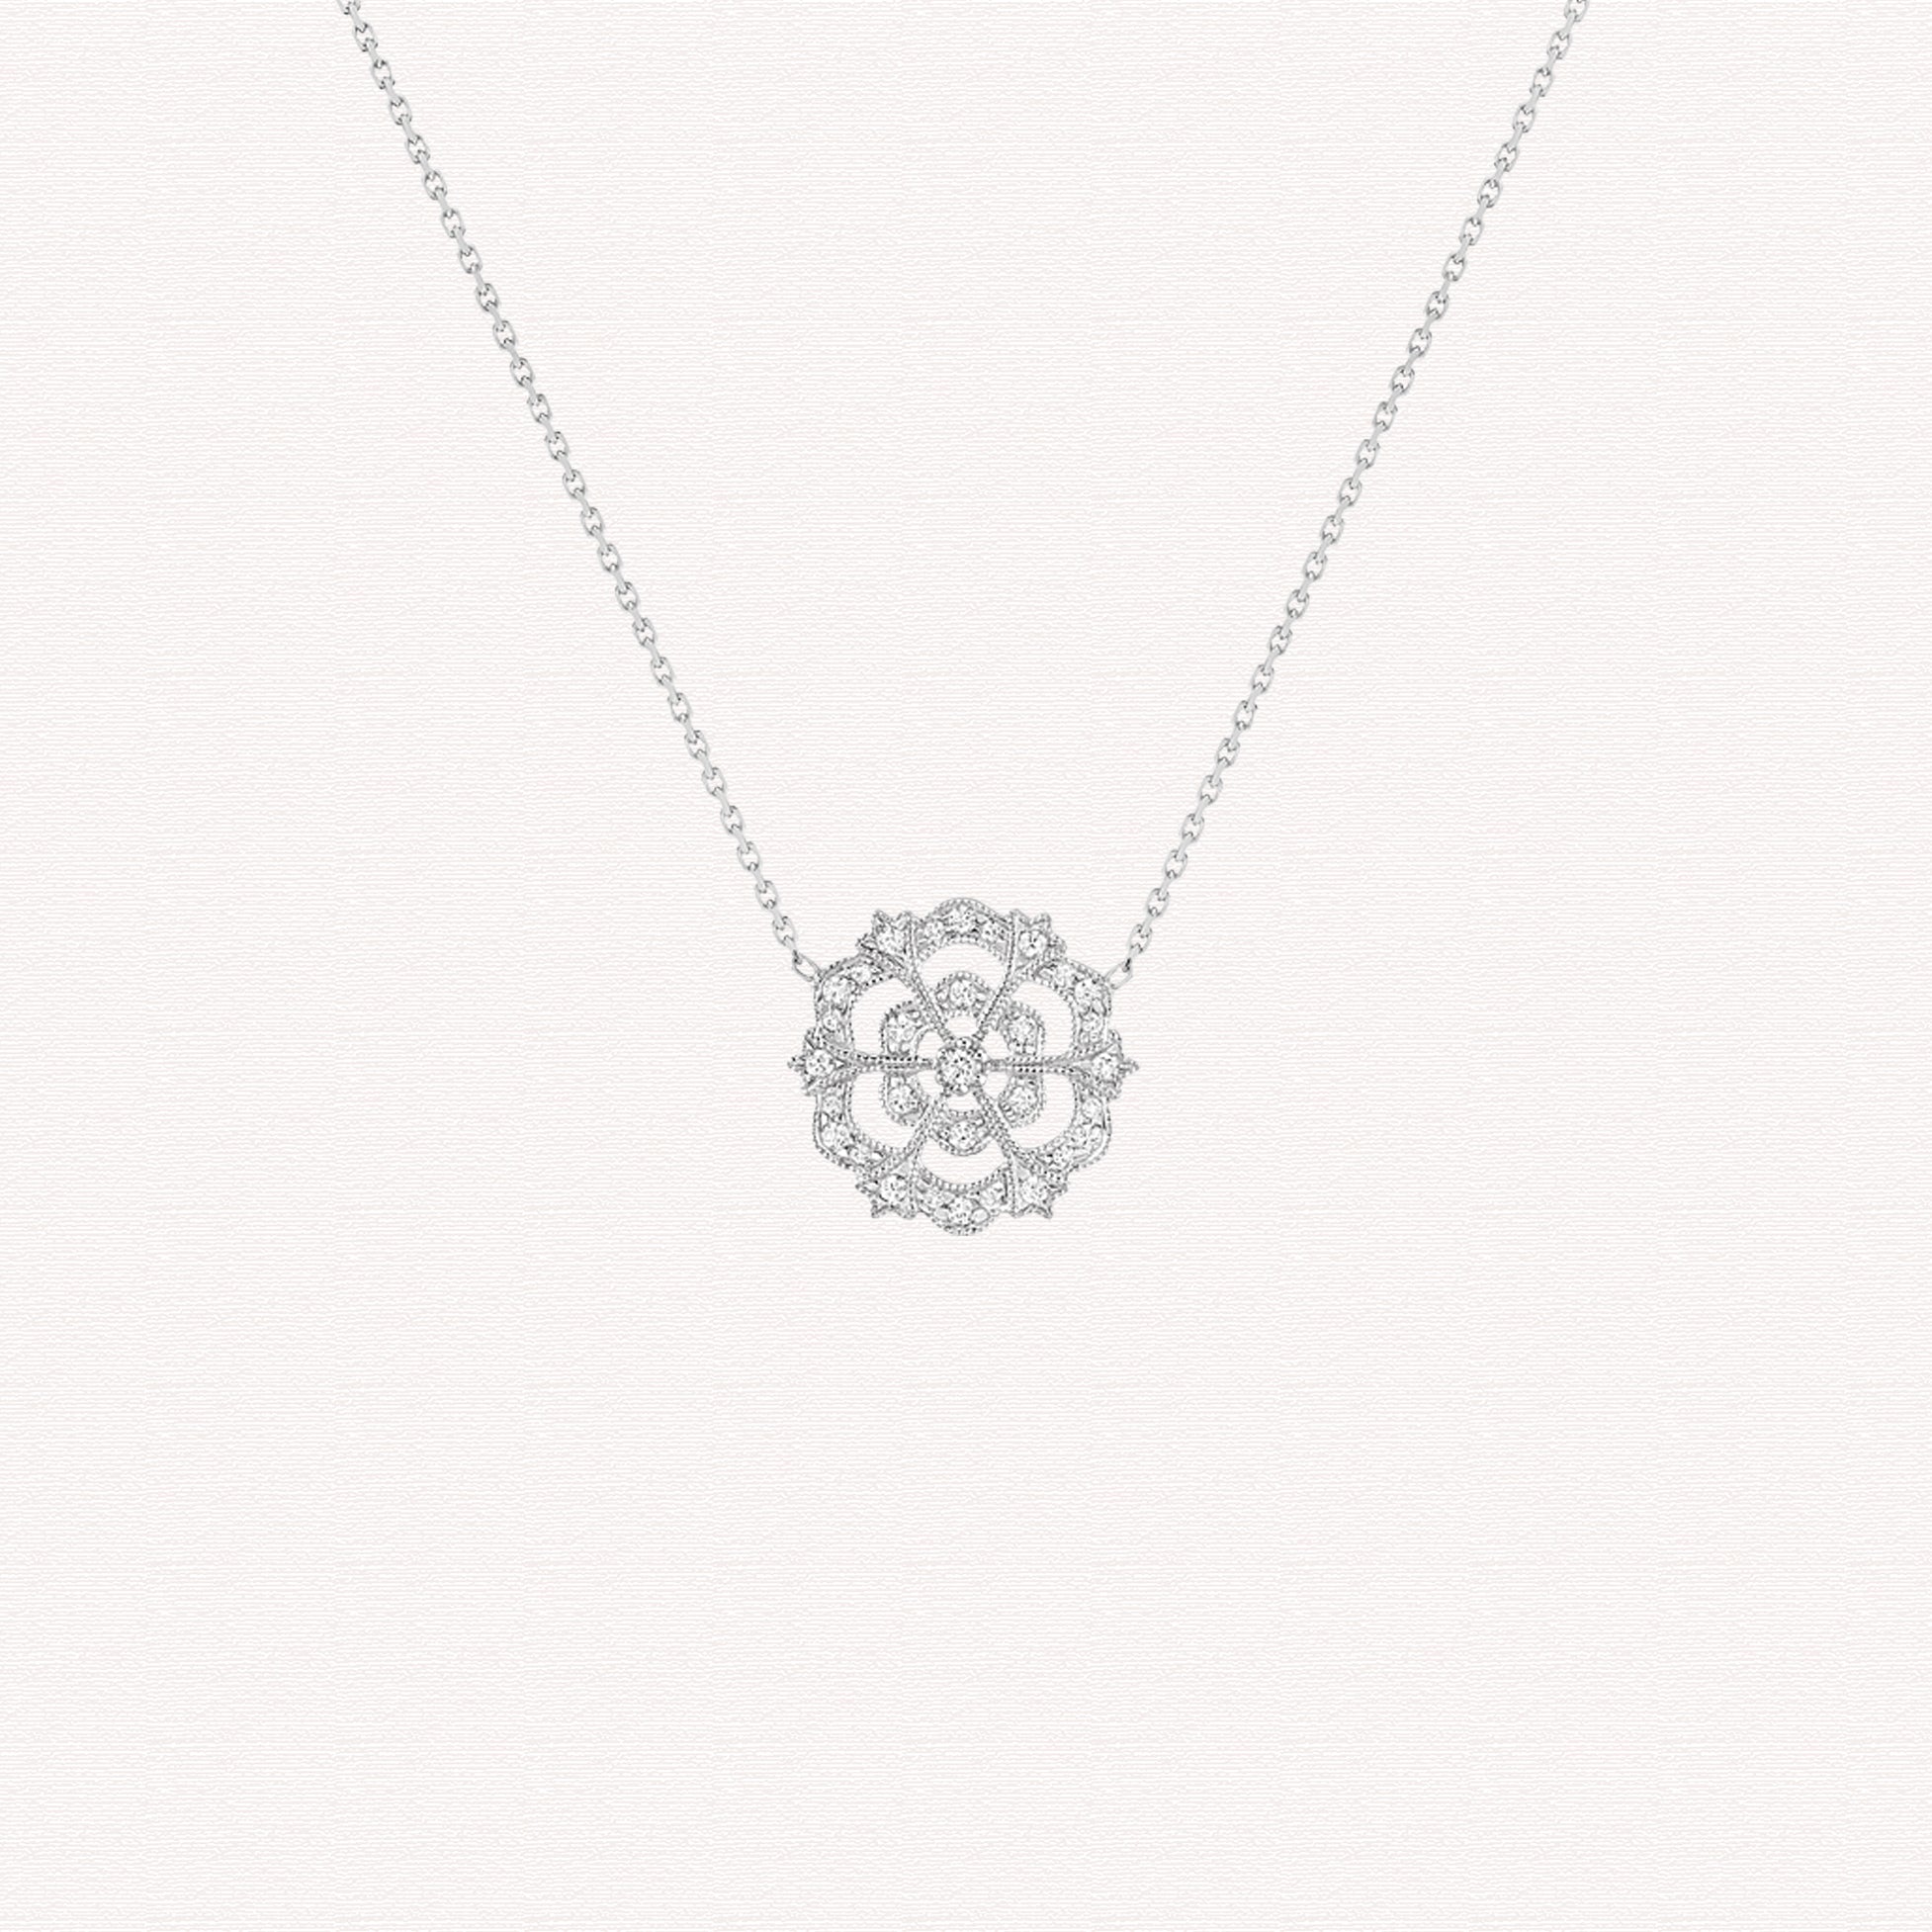 Necklace - Lace